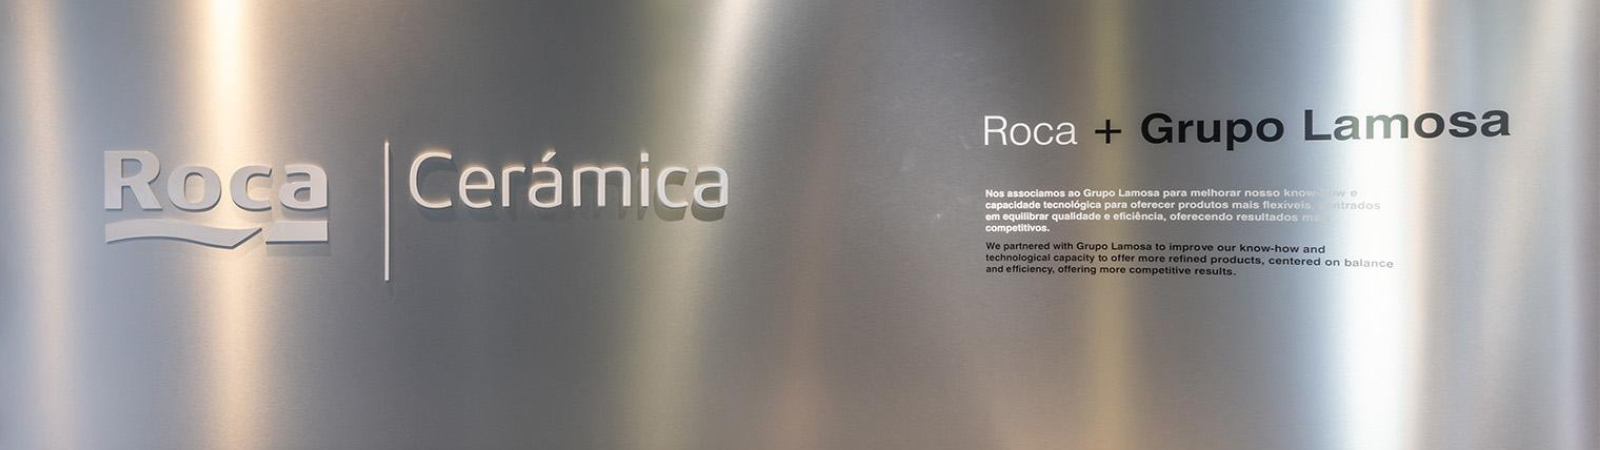 Incepa (Roca Brasil Cerâmica), owner of the Incepa and Roca Cerâmica (Gruppo Lamosa) brands, invests in a second SACMI Continua+